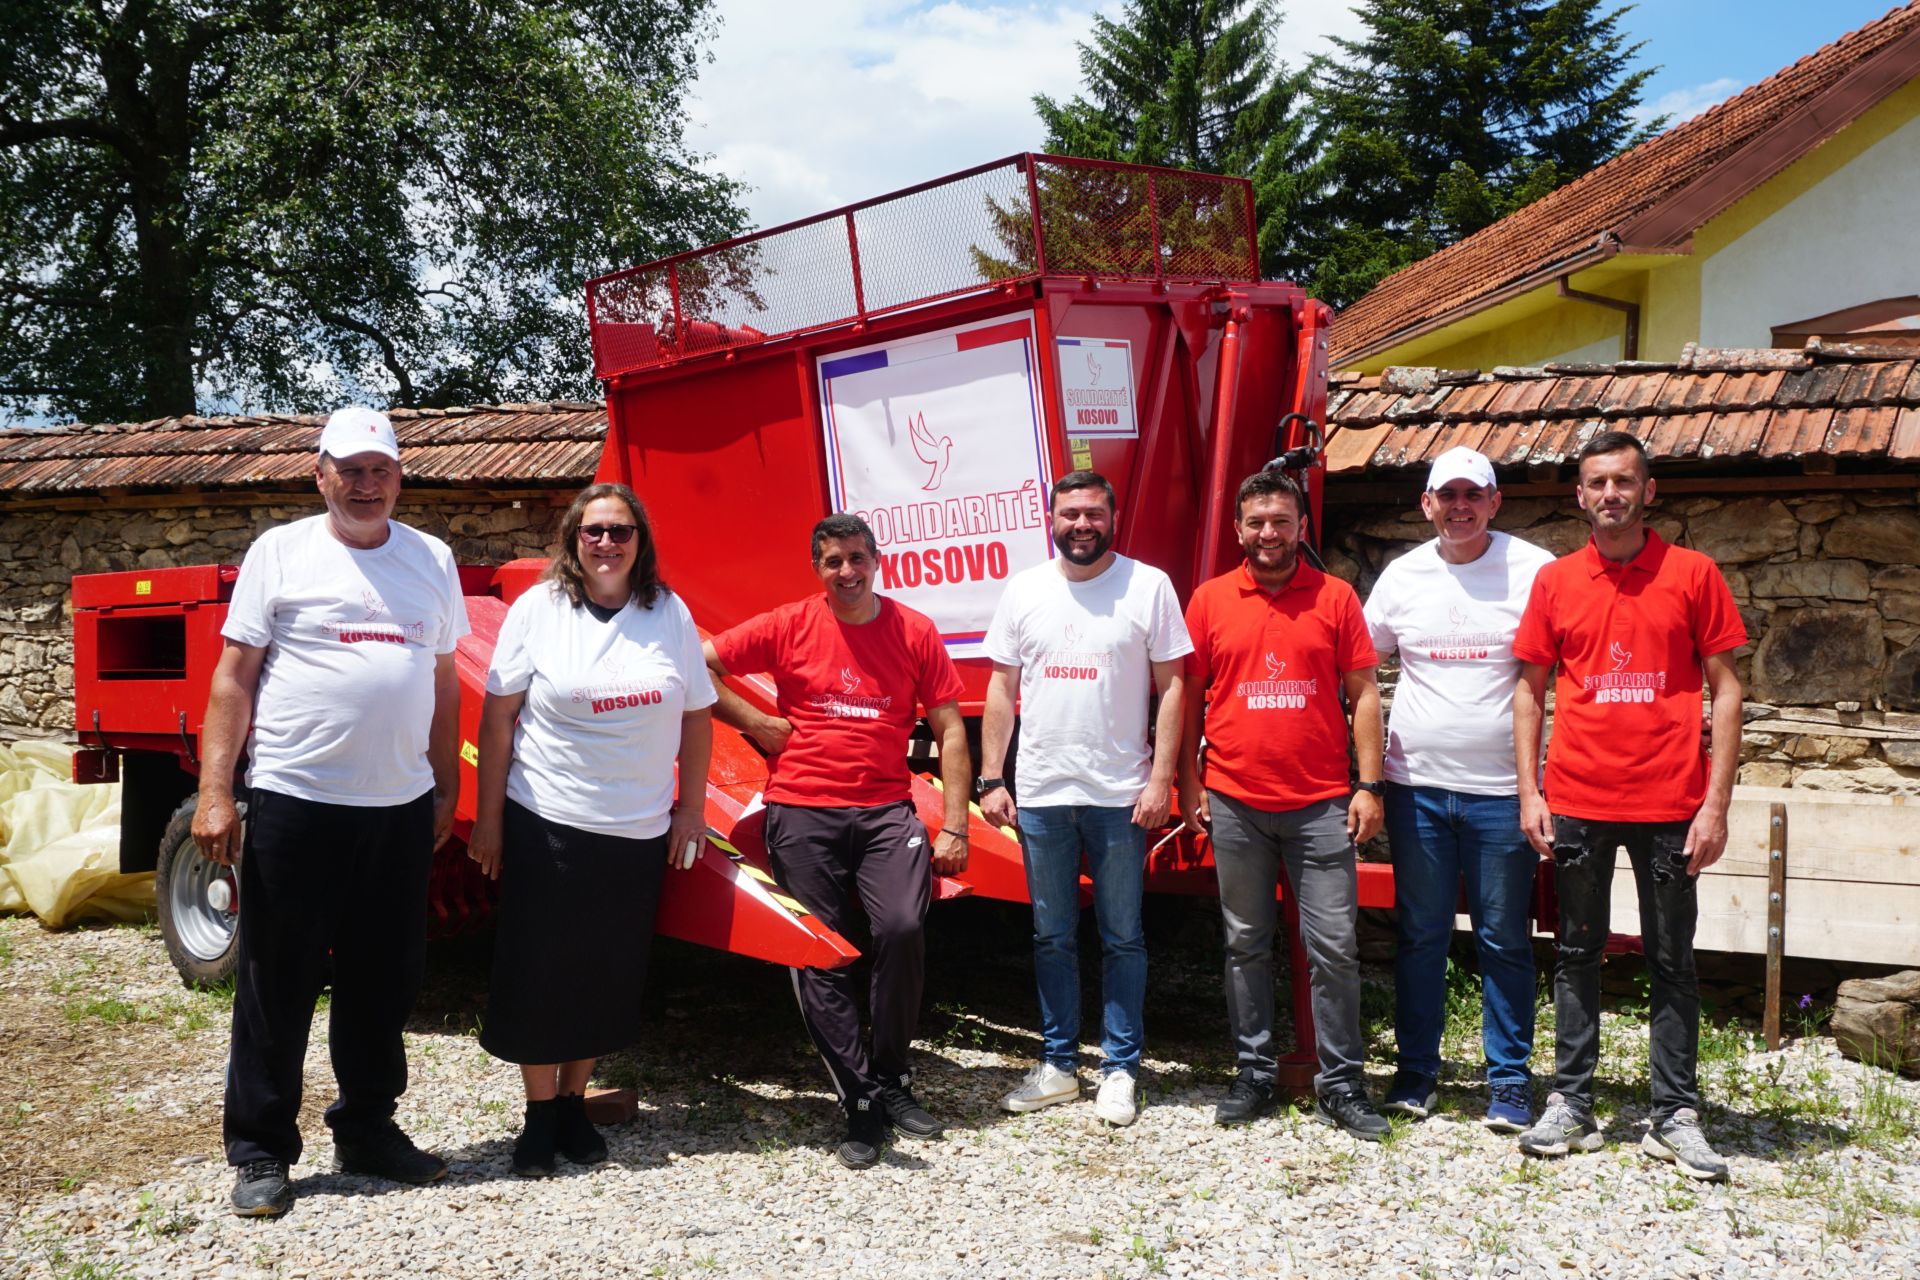 L’équipe de la soupe populaire de Novo Brdo au Kosovo-Métochie réceptionne 34000 euros de matériel agricole offert par Solidarité Kosovo